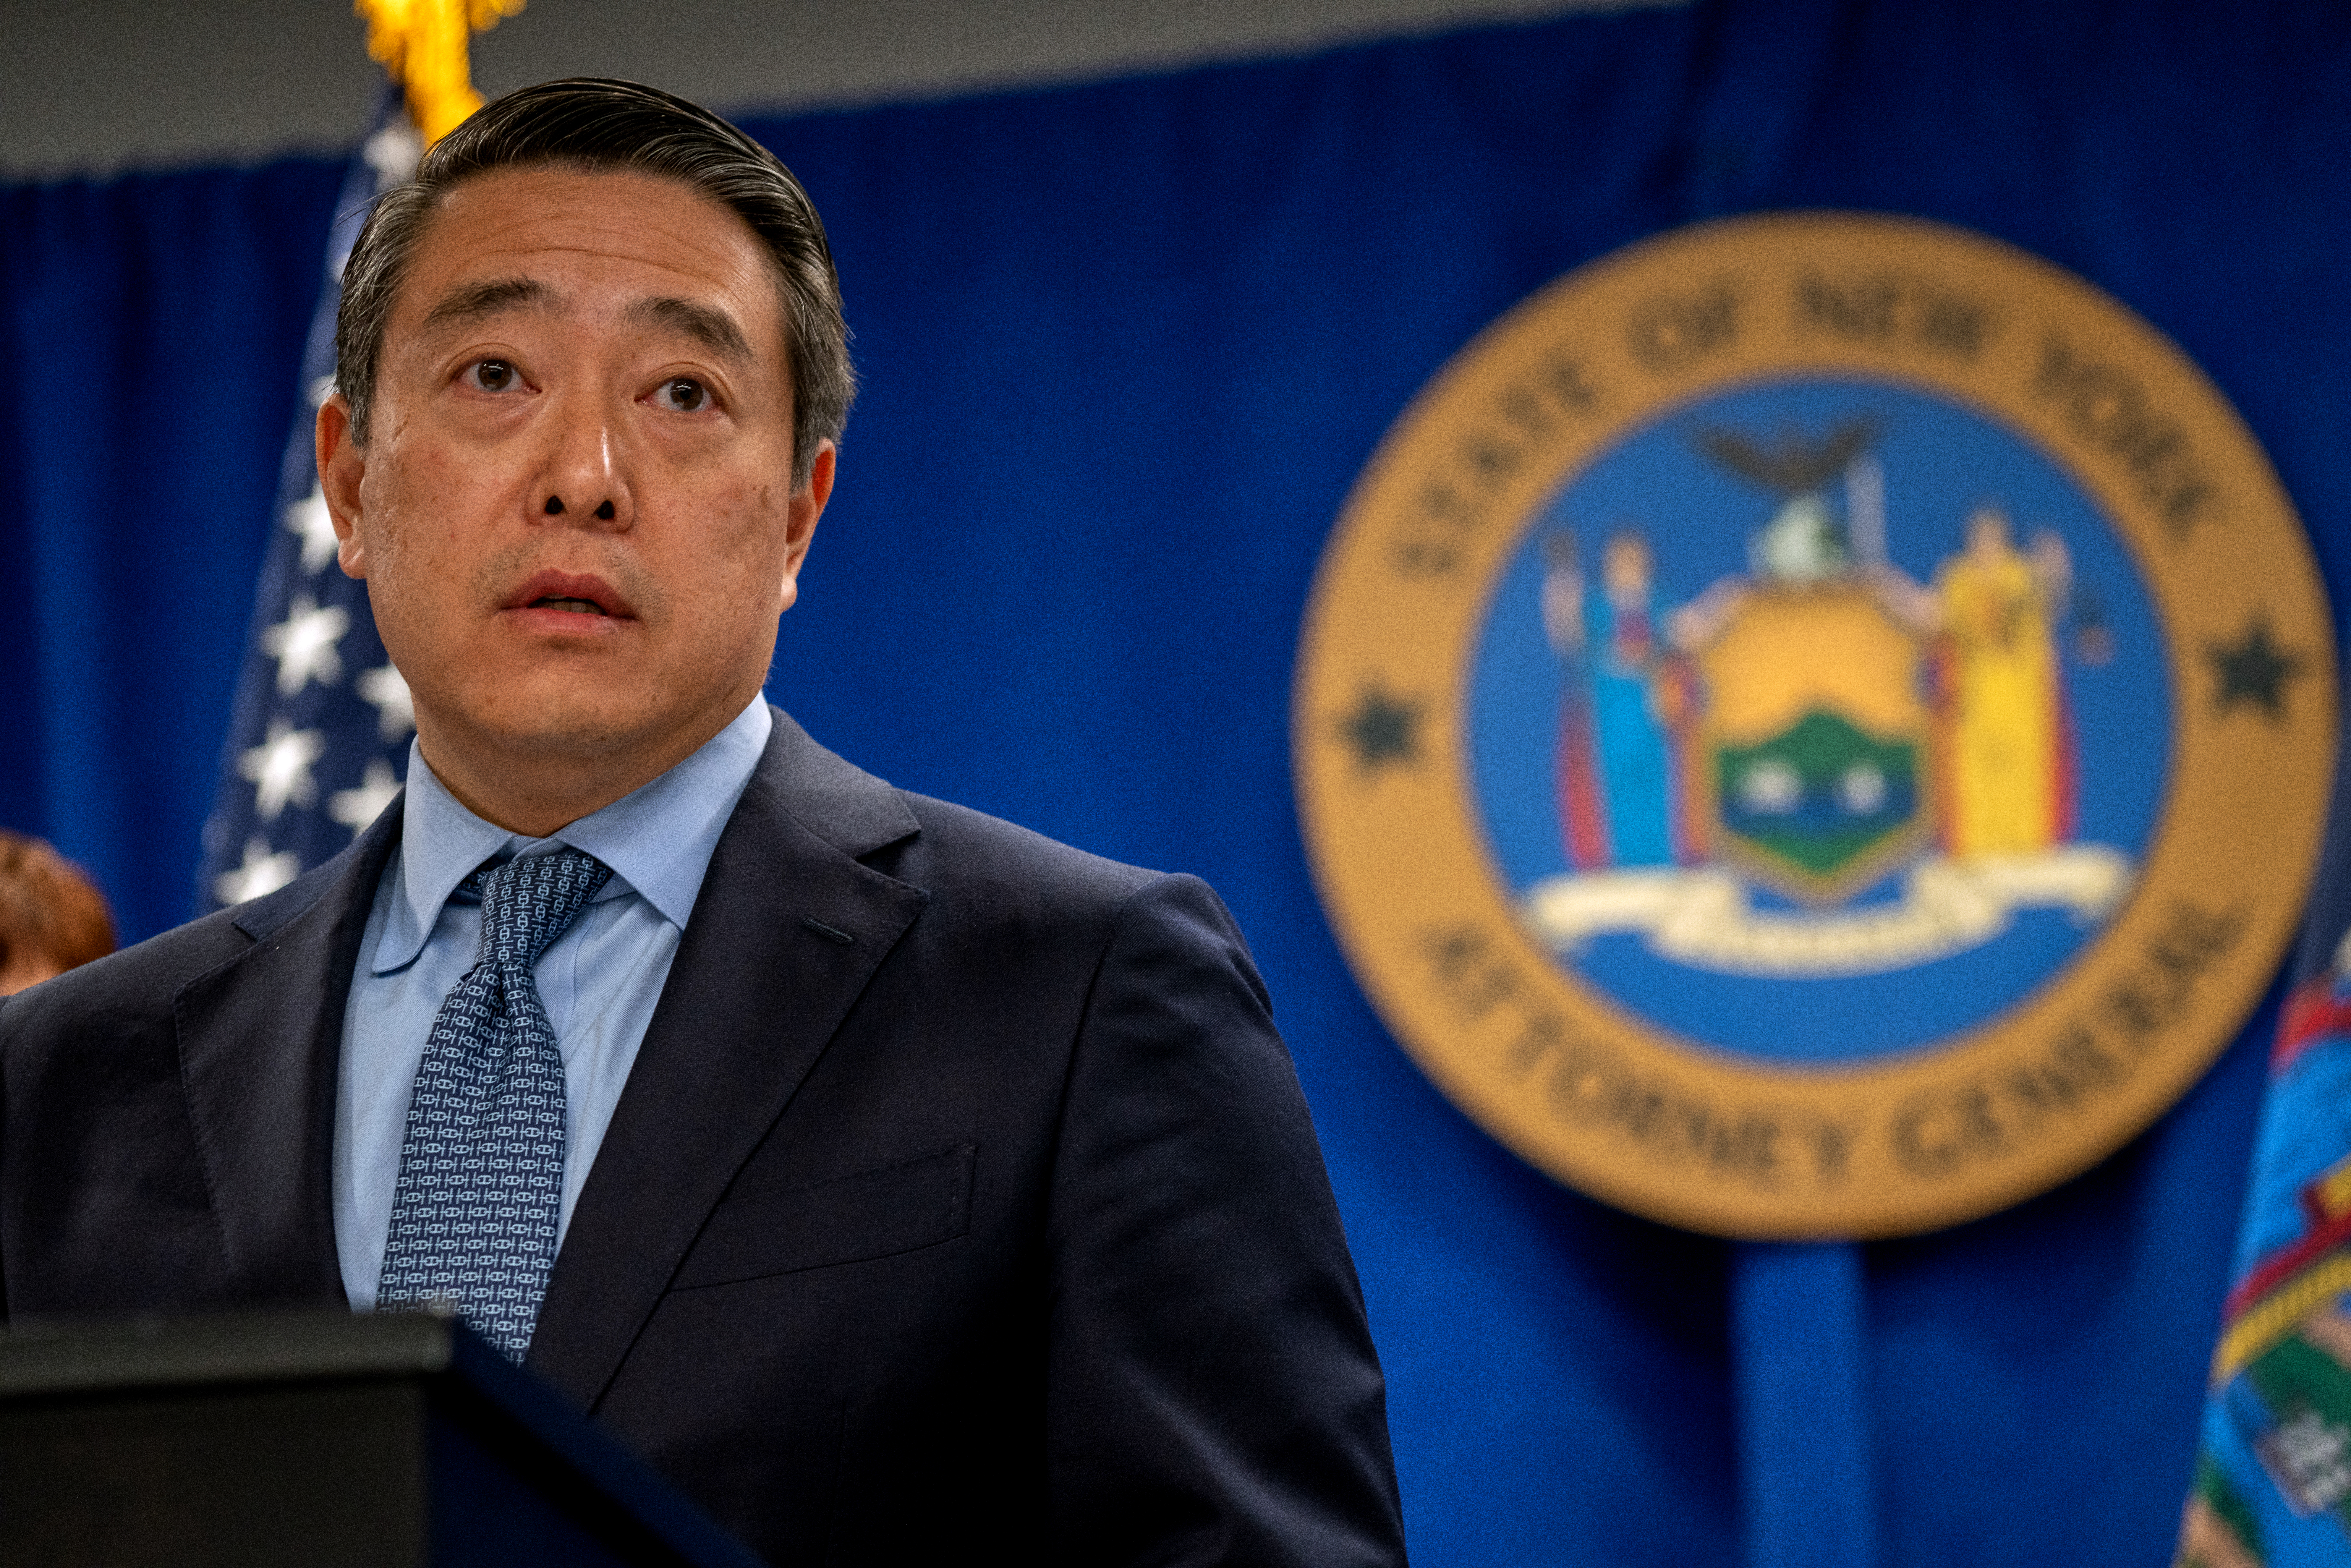 Joon H. Kim egykori szövetségi ügyész, az Andrew Cuomo elleni szexuális zaklatási vádakat kivizsgáló jogász keddi sajtótájékoztatóján.